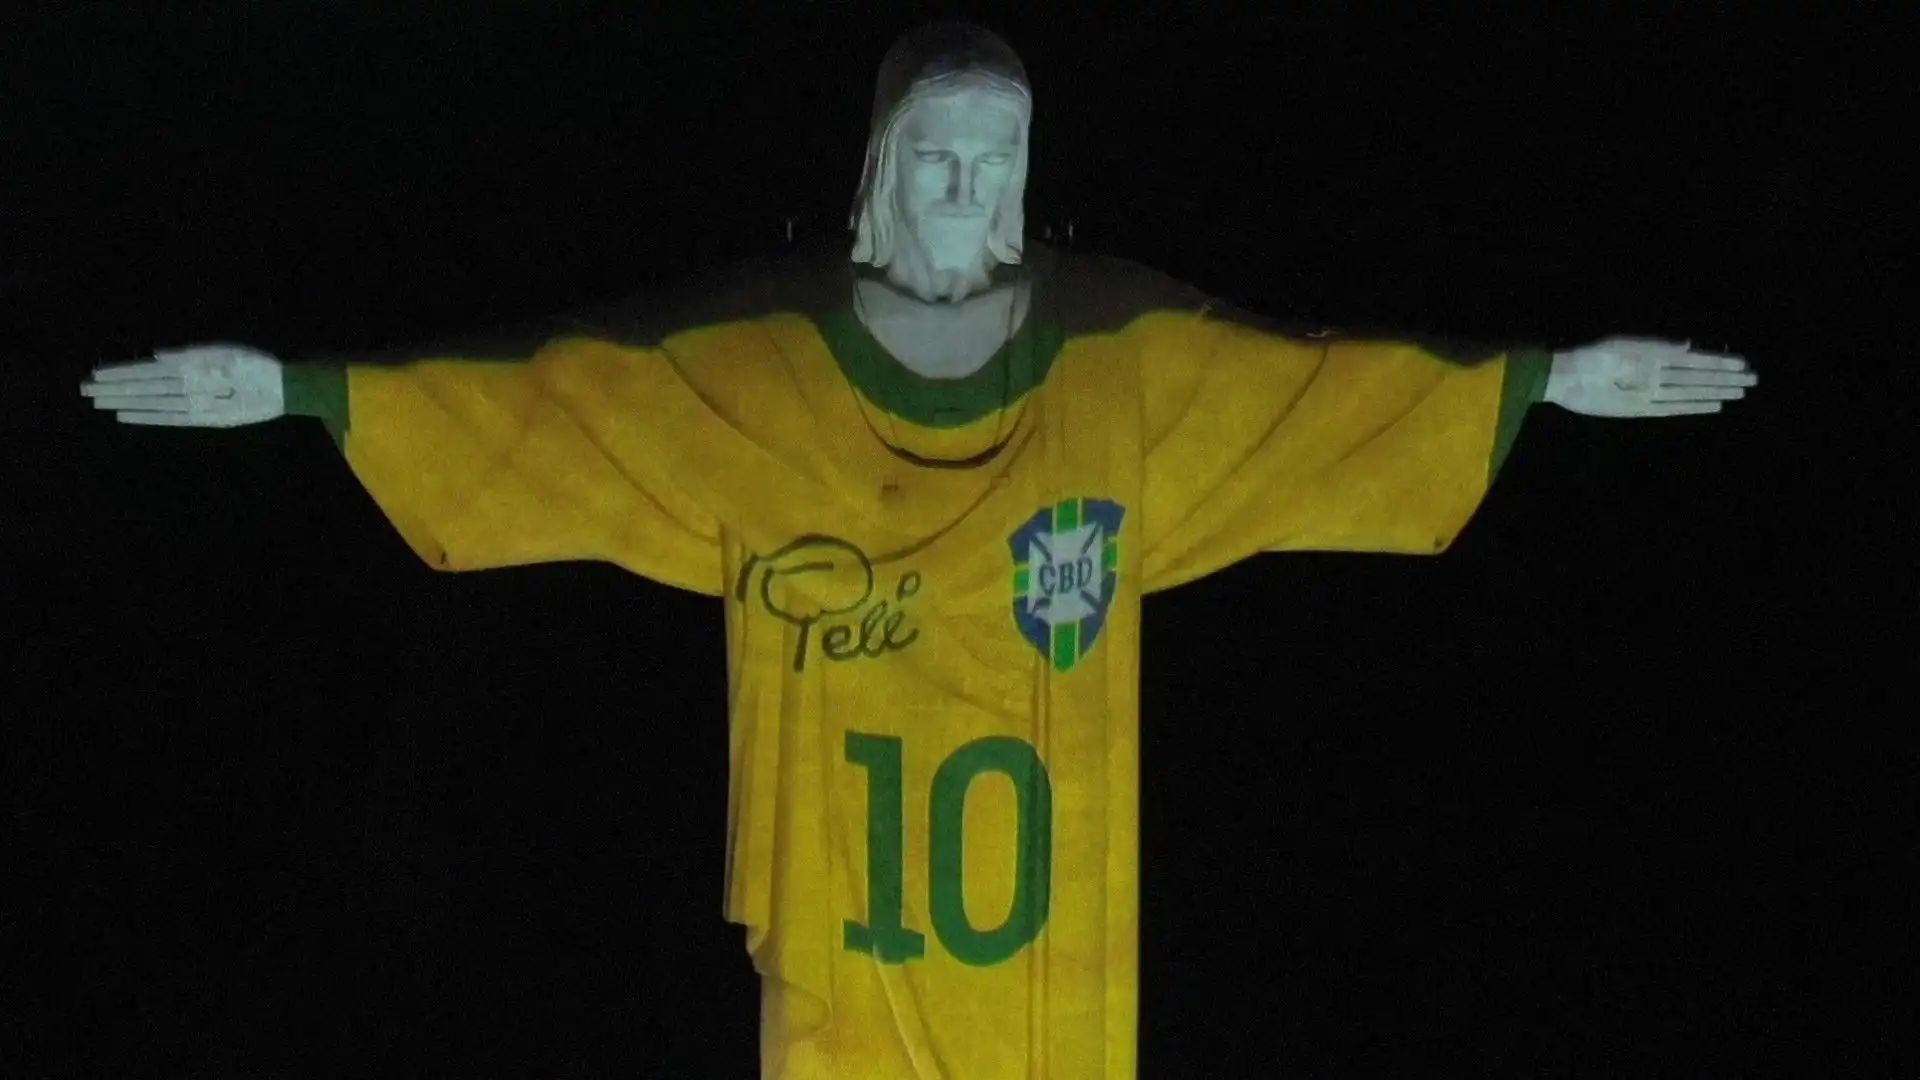 Ecco la maglia nel dettaglio, dove si vede bene il nome di Pelé